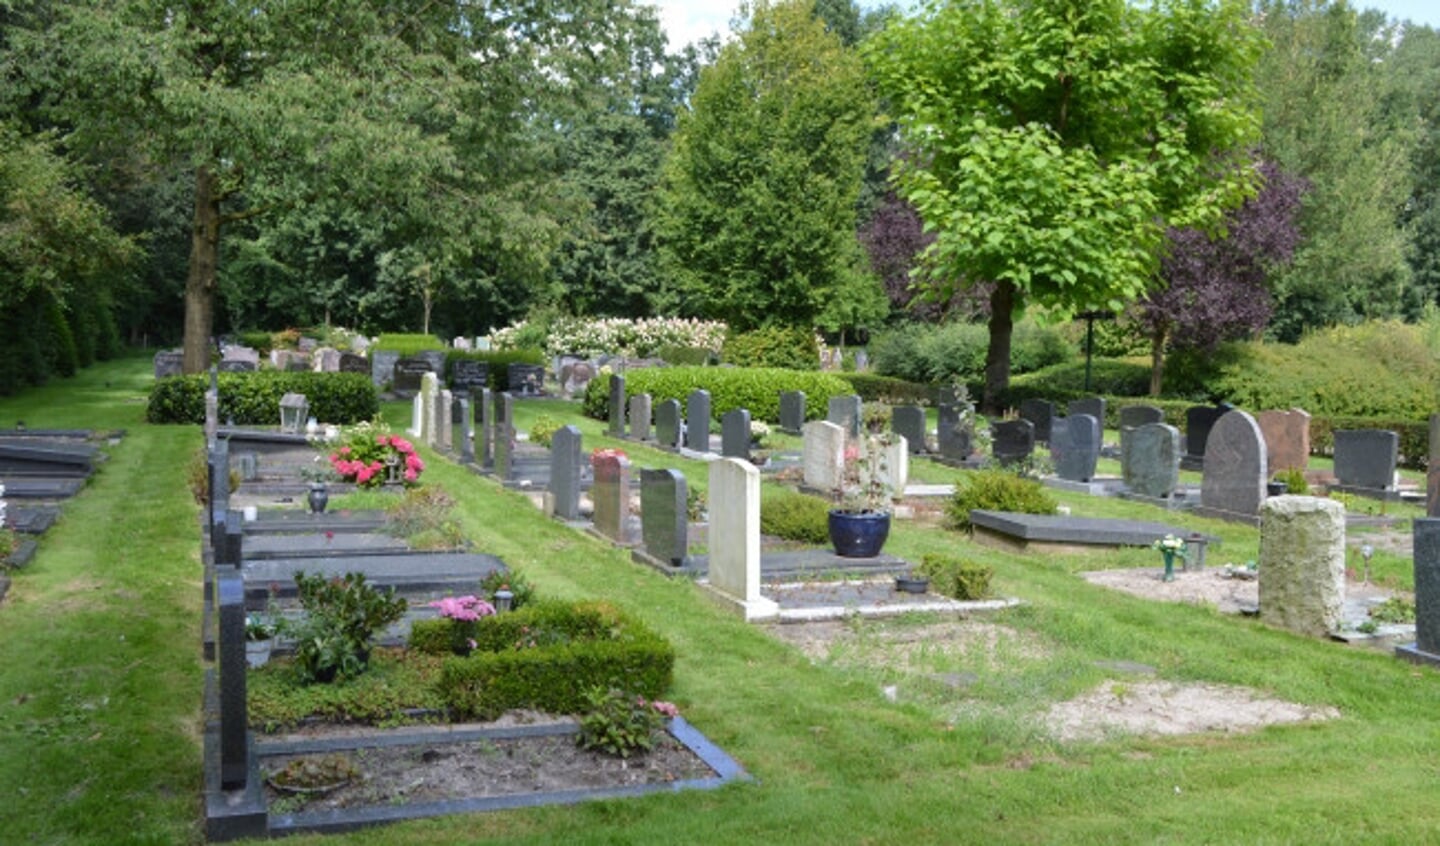 Begraafplaats De Wissel in Dronten.